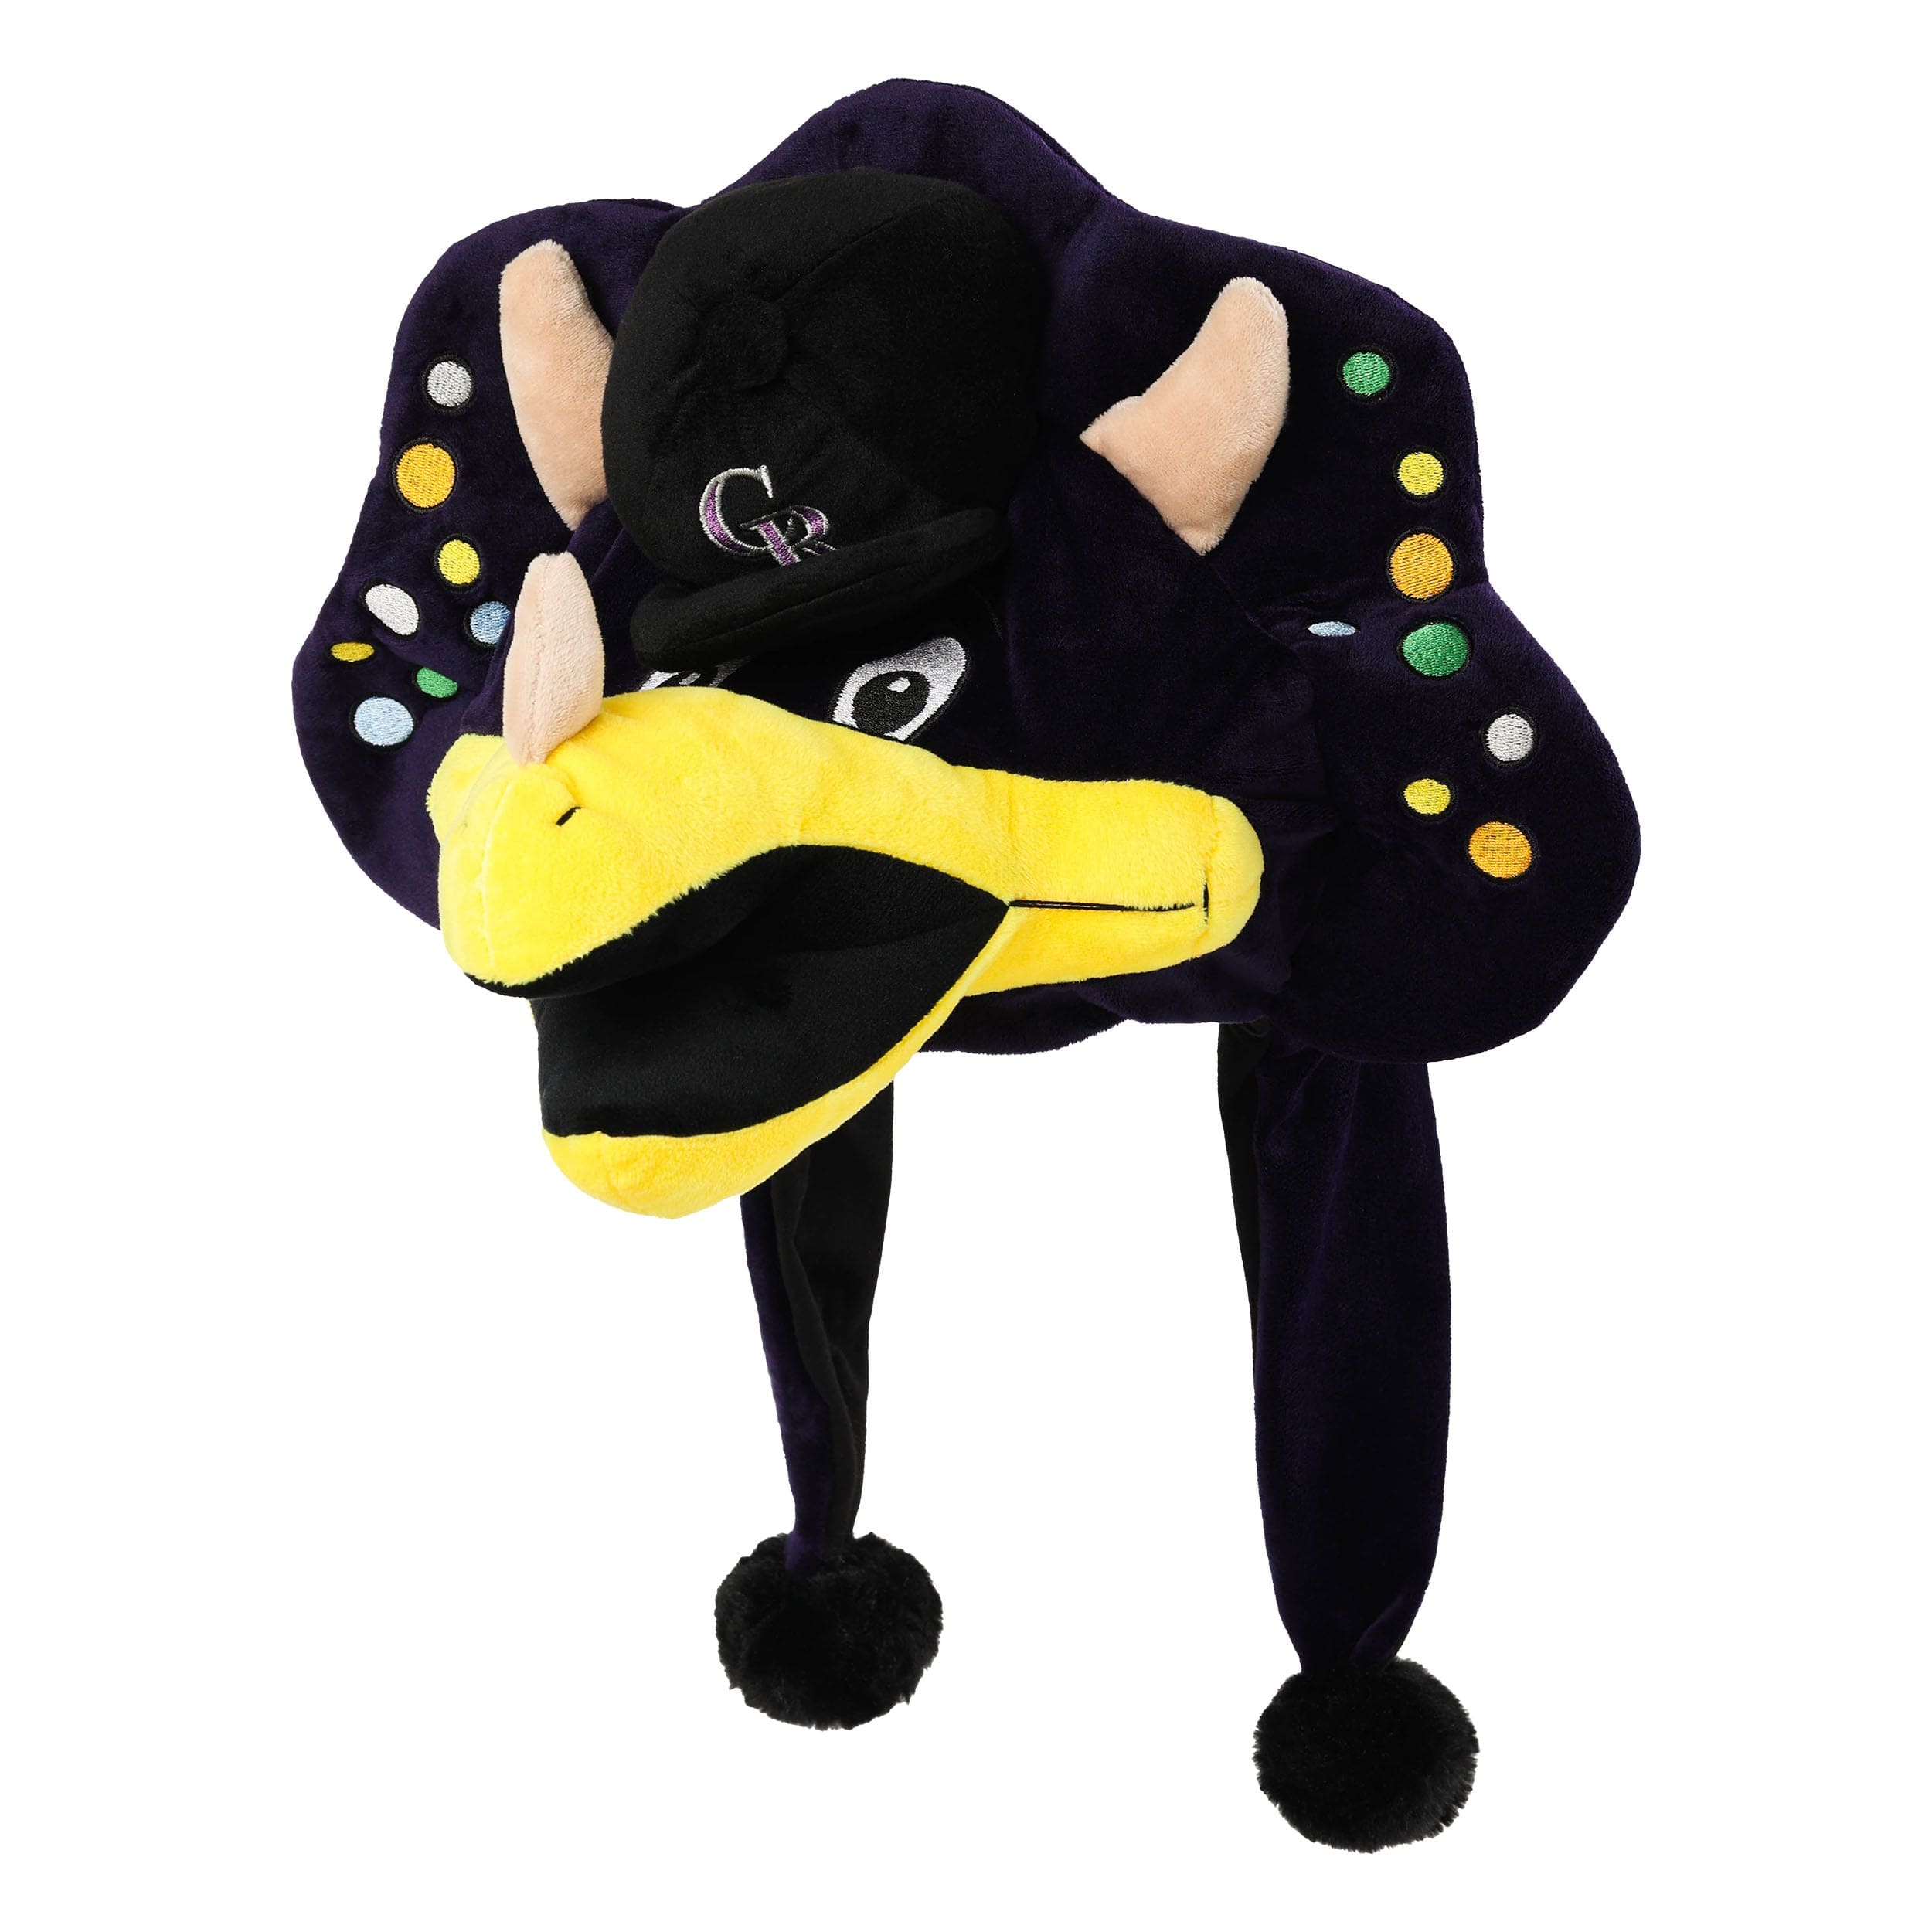 colorado rockies mascot